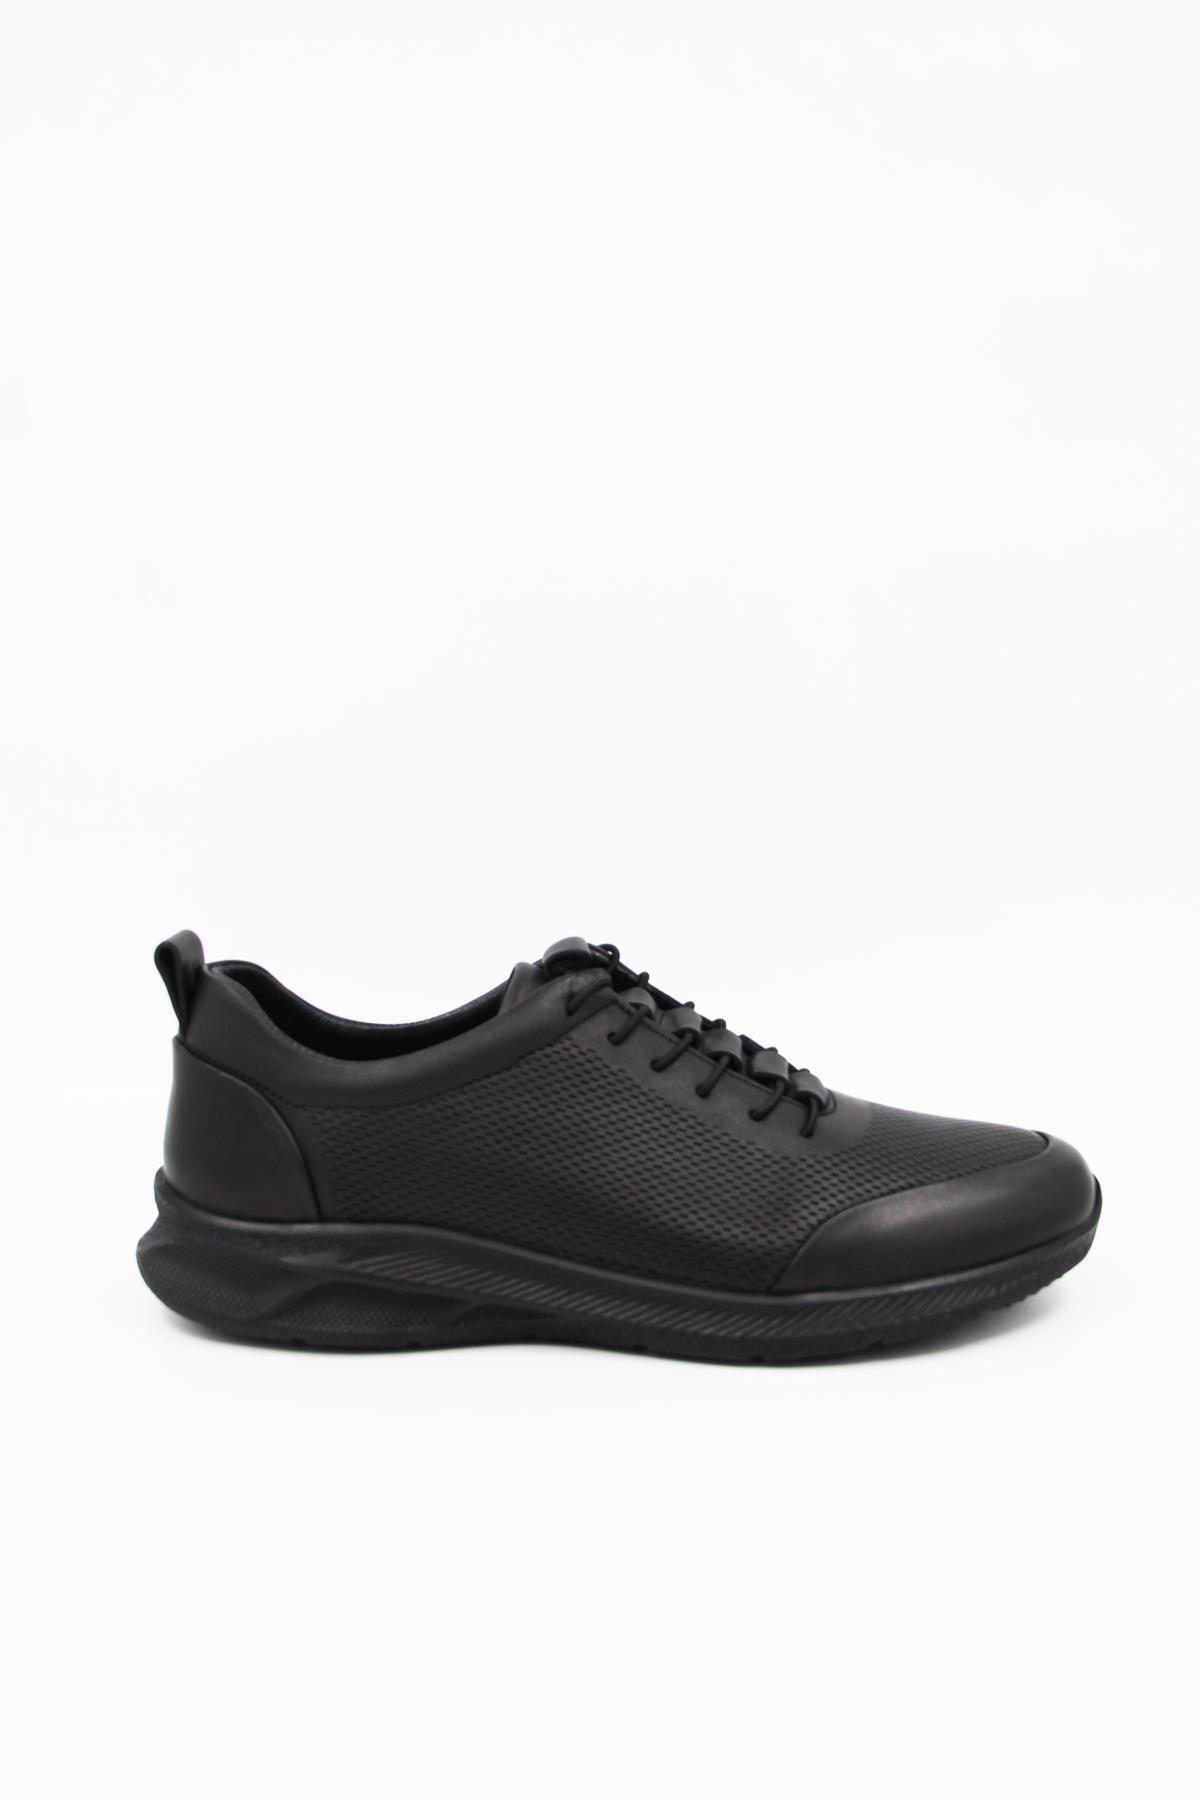 Ceyo 2430 Erkek Comfort Ayakkabı - Siyah